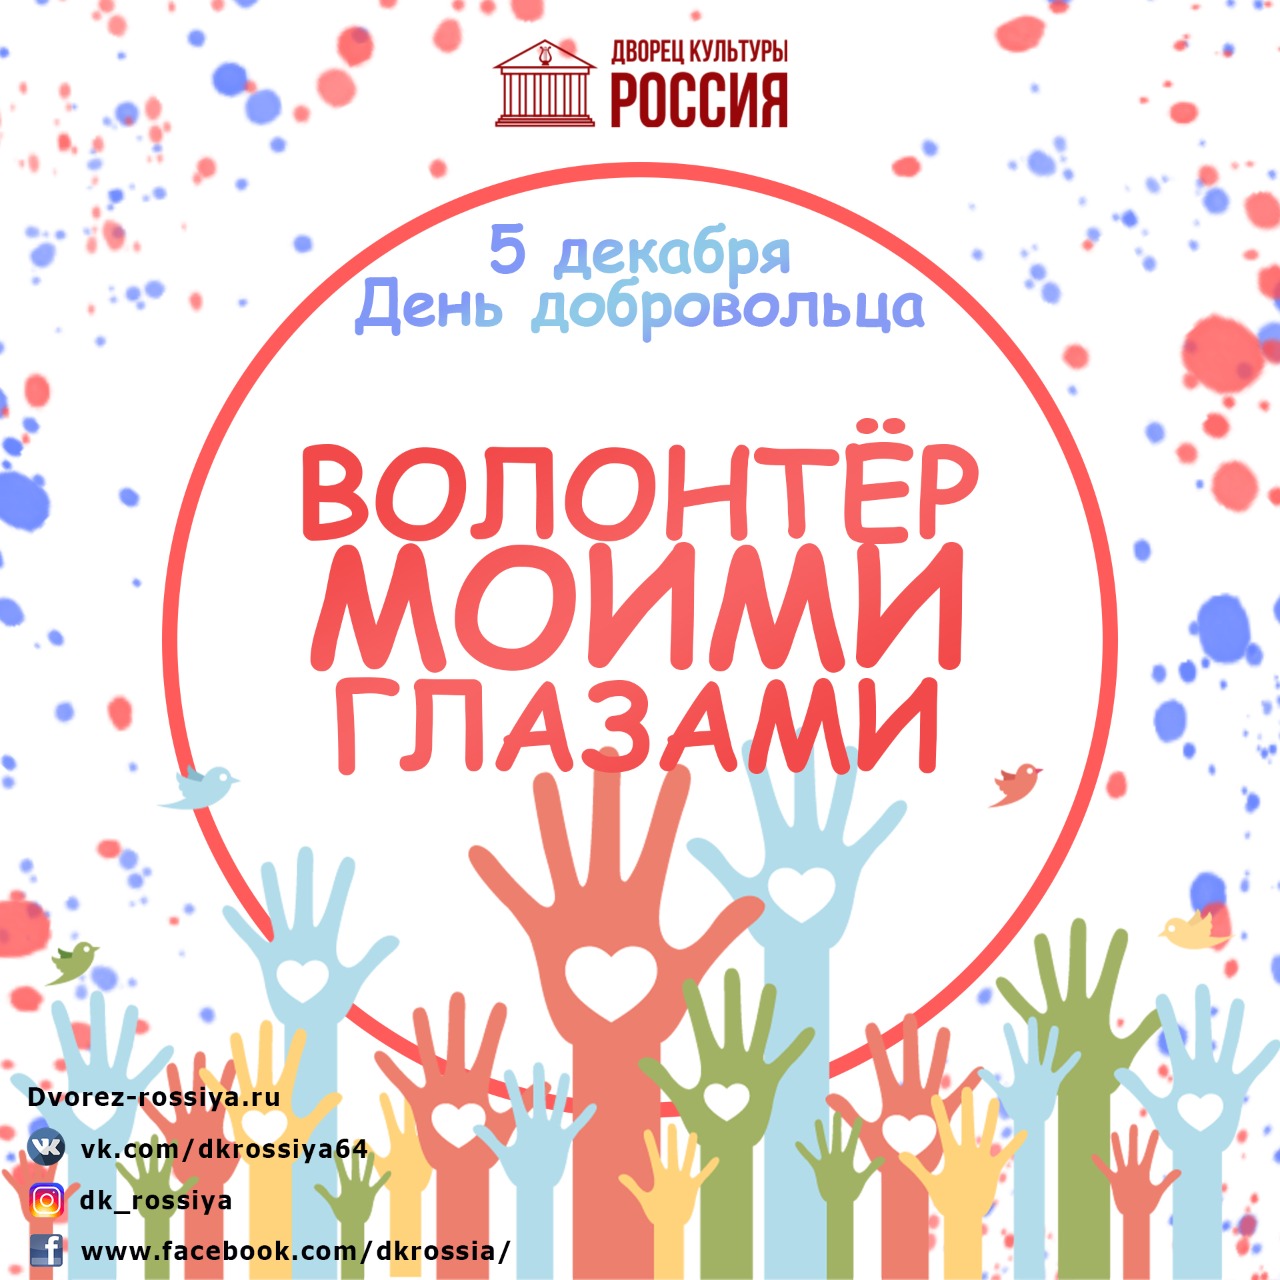 ДК «Россия» объявляет о старте художественной эстафеты «Волонтер моими глазами» ко Дню добровольца!